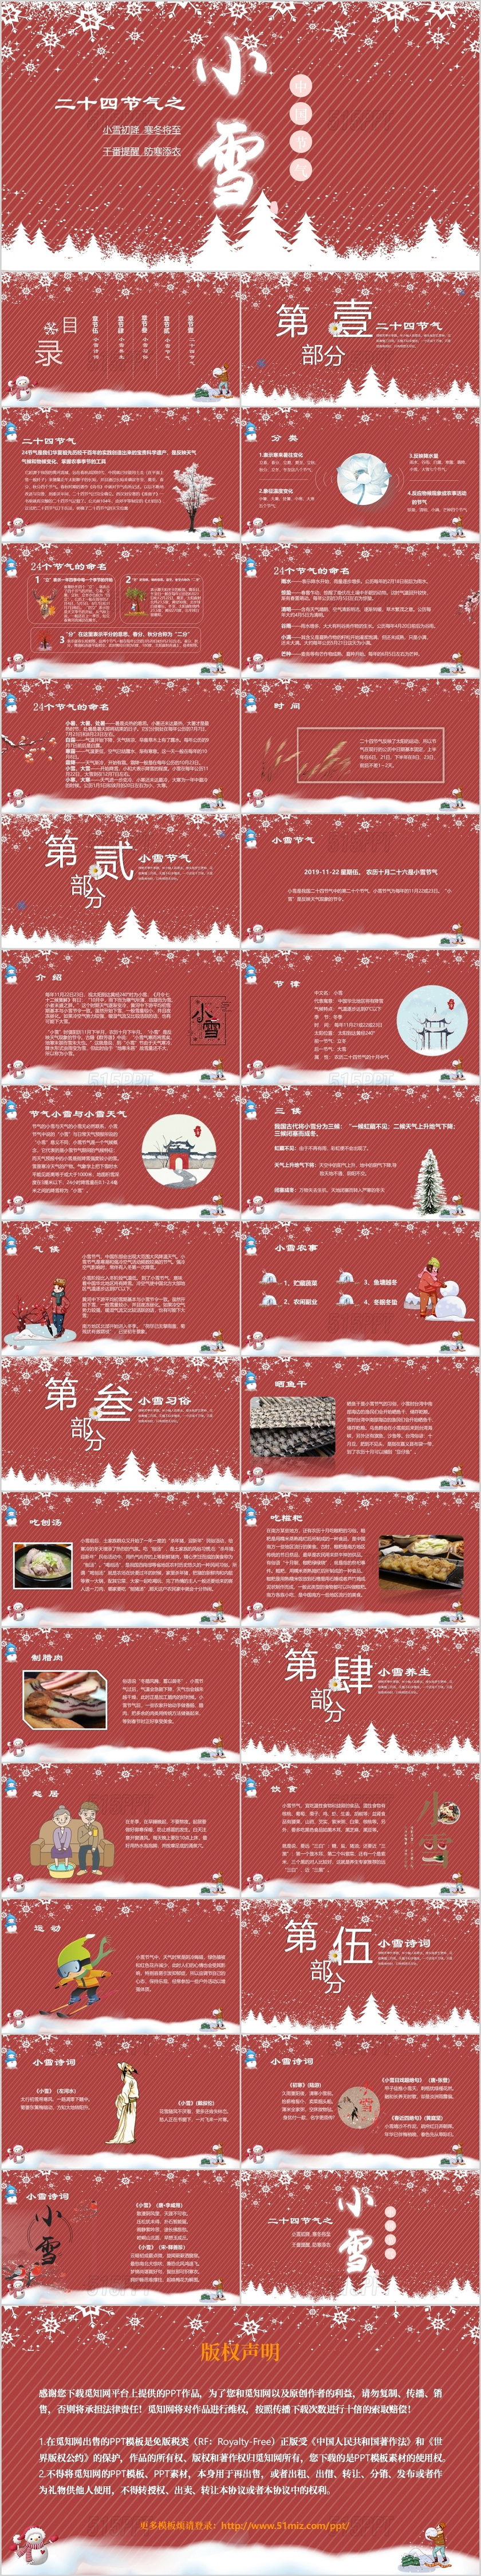 中国传统节日二十四节气之小雪介绍PPT模板